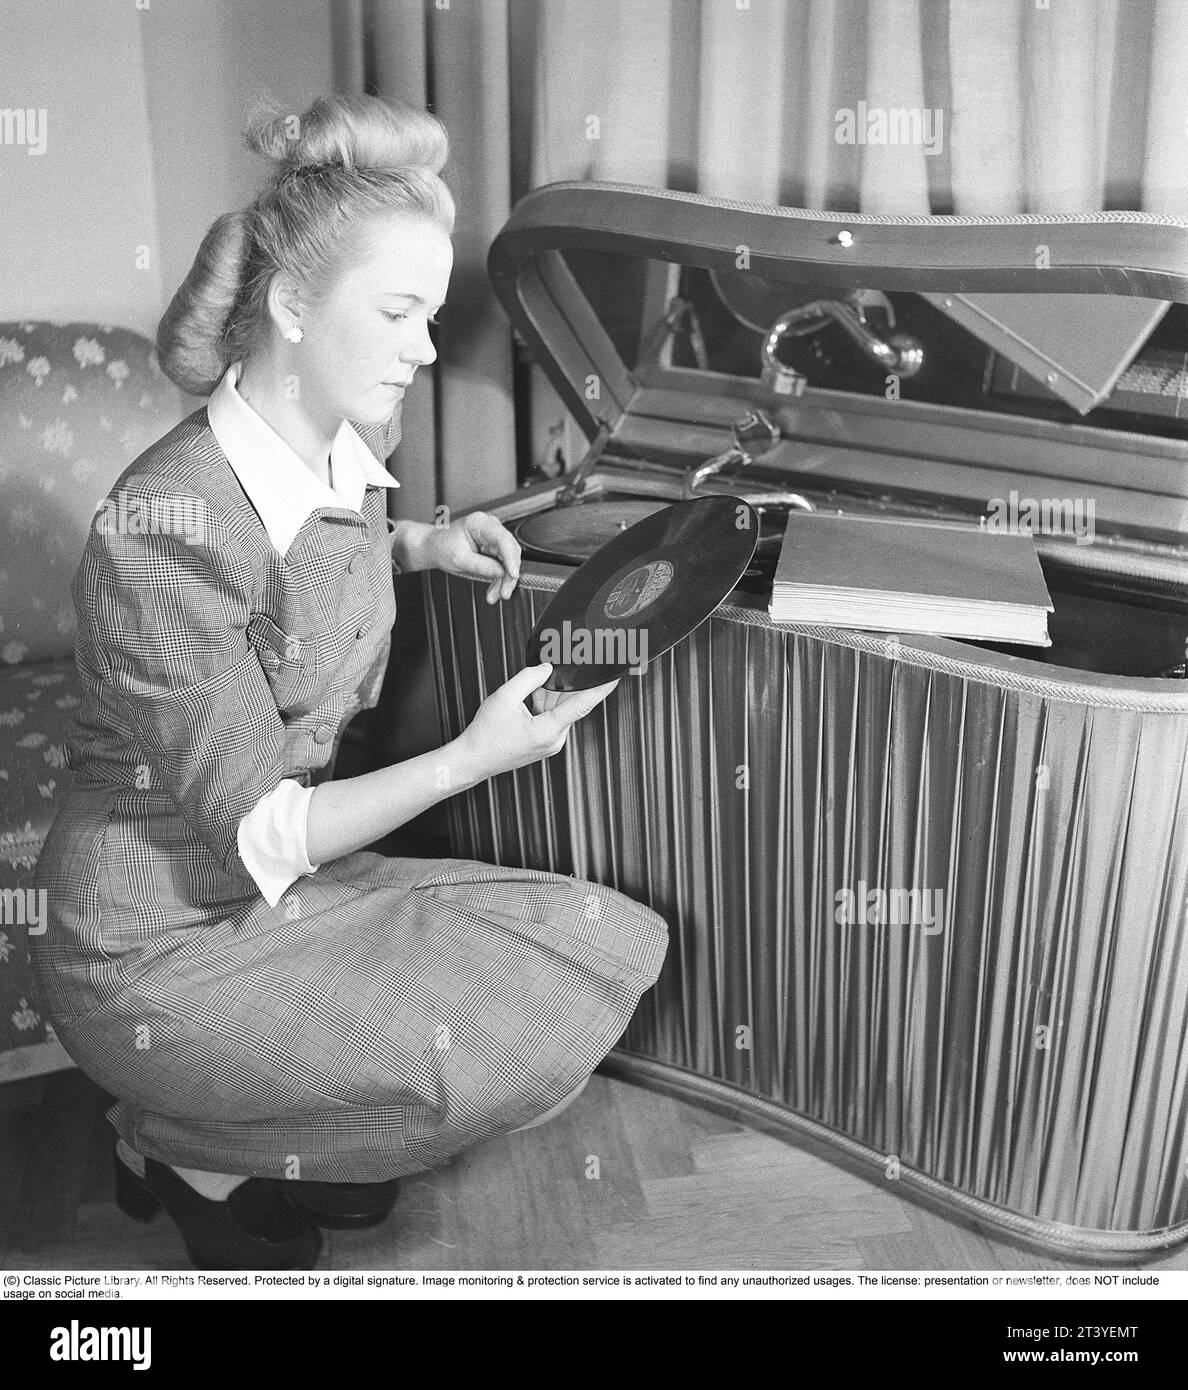 Mujer en un gramófono en los años cuarenta. Tiene uno de los discos para leer la etiqueta que contenía la información sobre lo que se grabó, el nombre de las canciones y el artista. Generalmente el logotipo de la compañía discográfica fue presentado en la etiqueta. Los discos estaban hechos de material frágil y la velocidad del disco para sonar como debería era de 78 revoluciones por minuto. El gramófono es un modelo de lujo con una tela de satén que cubre los laterales. Suecia 1947. Kristoffersson ref AB22-4 Foto de stock